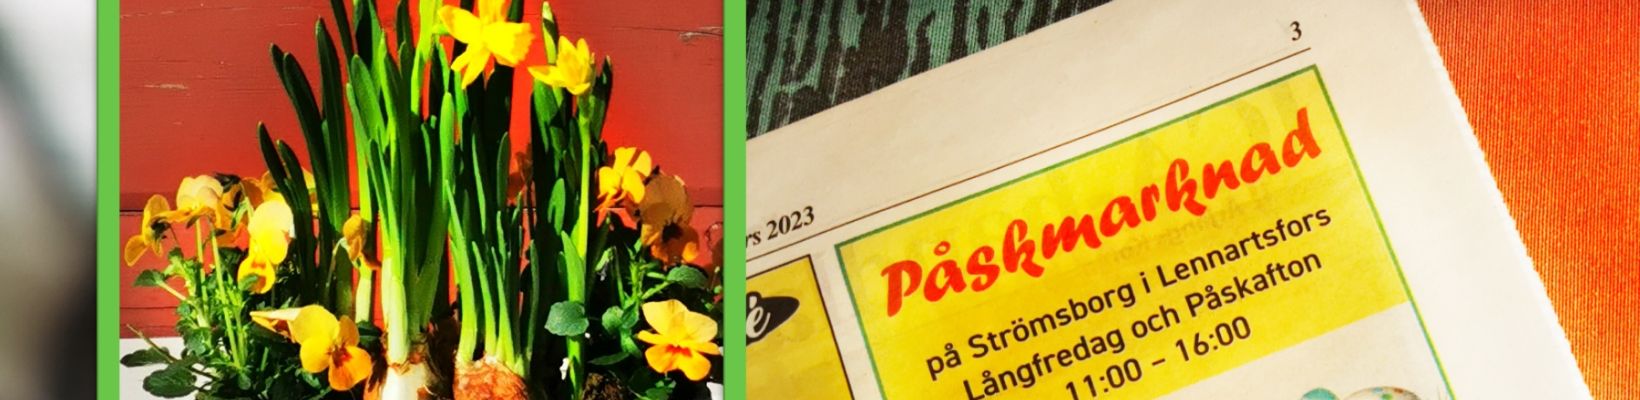 Paskmarknad-Lennartsfors-2023-Gittas-Verkstad